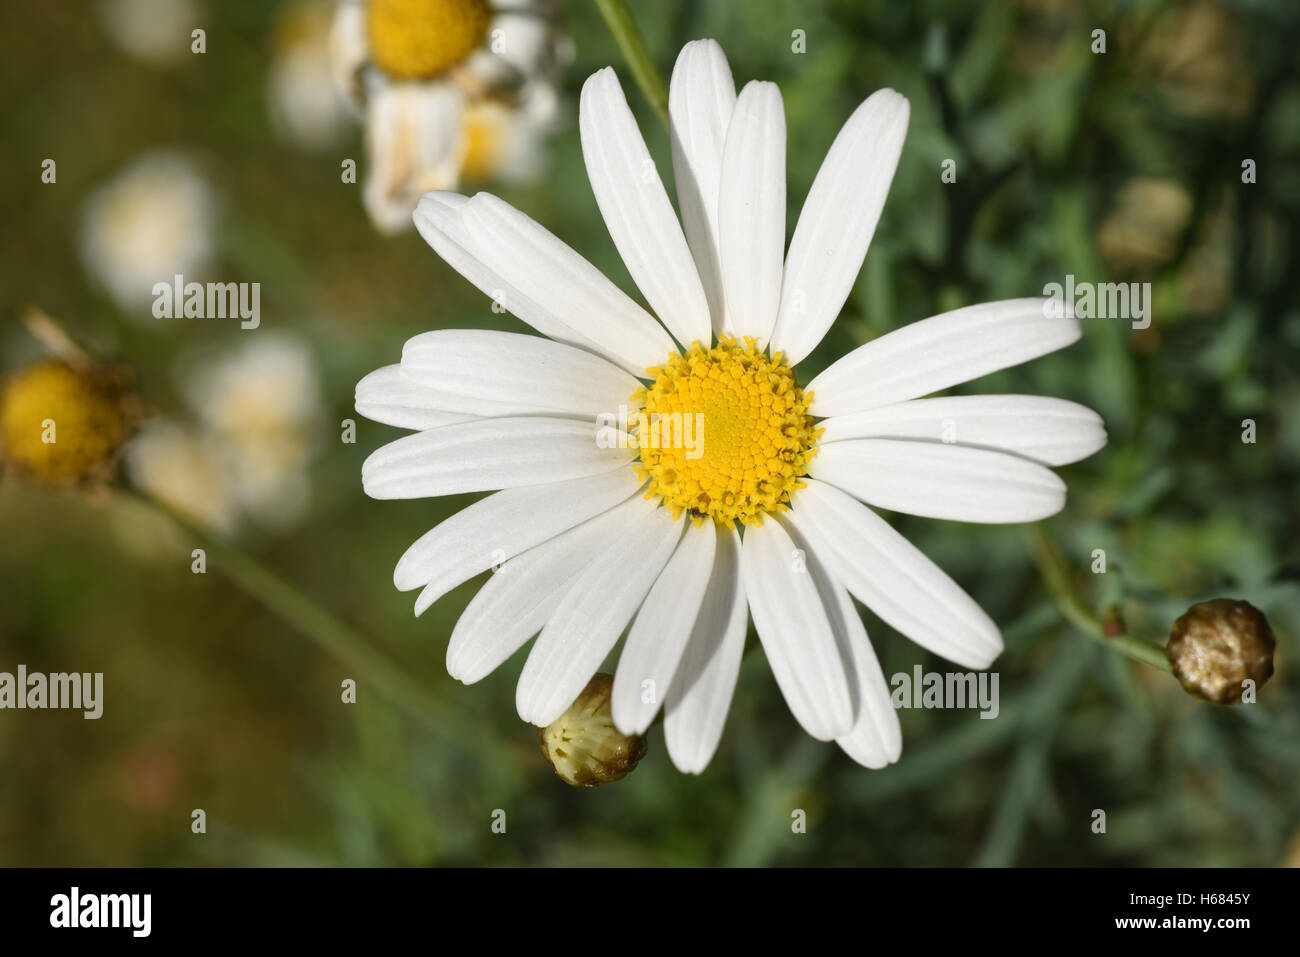 Schöne weiße Daisy Blume auf grüner Wiese, wilde Natur Landschaft Hintergrund mit Unschärfe-Effekt. Stockfoto